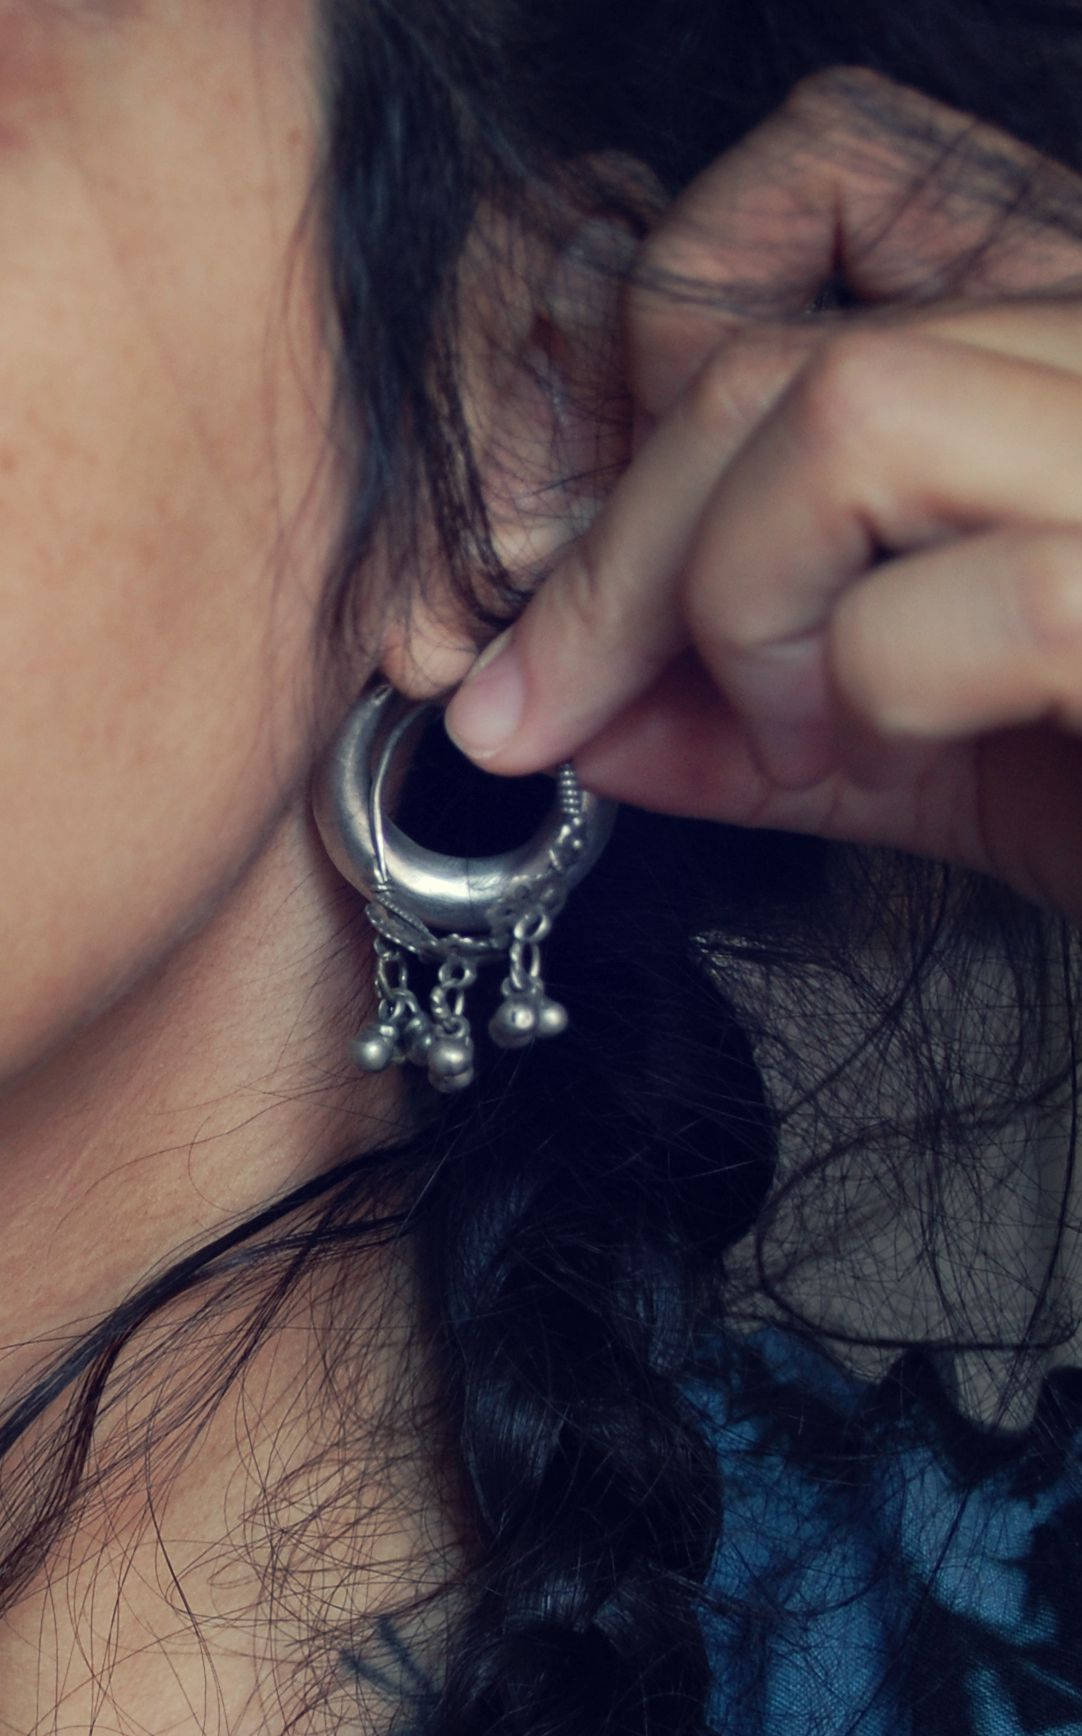 Rajasthani Hoop Earrings with Bells - Rajasthan Hoop Earrings - Rajasthani Jewelry - Tribal Hoop Earrings